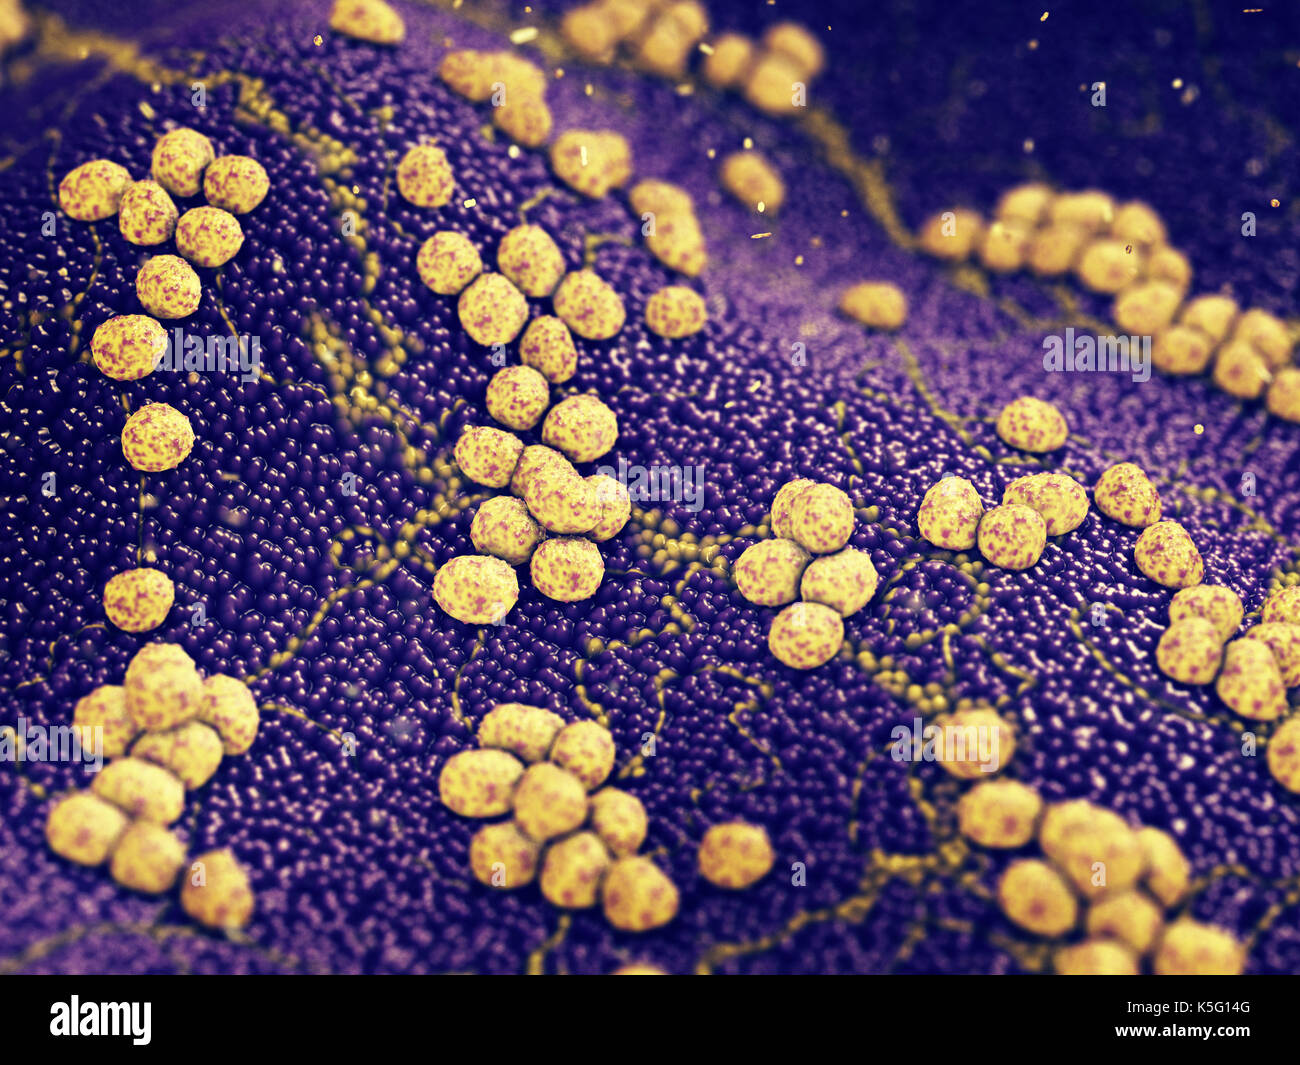 Colonie de bactéries Staphylococcus aureus provoquant une infection de la peau , les maladies infectieuses résistantes aux antibiotiques Banque D'Images